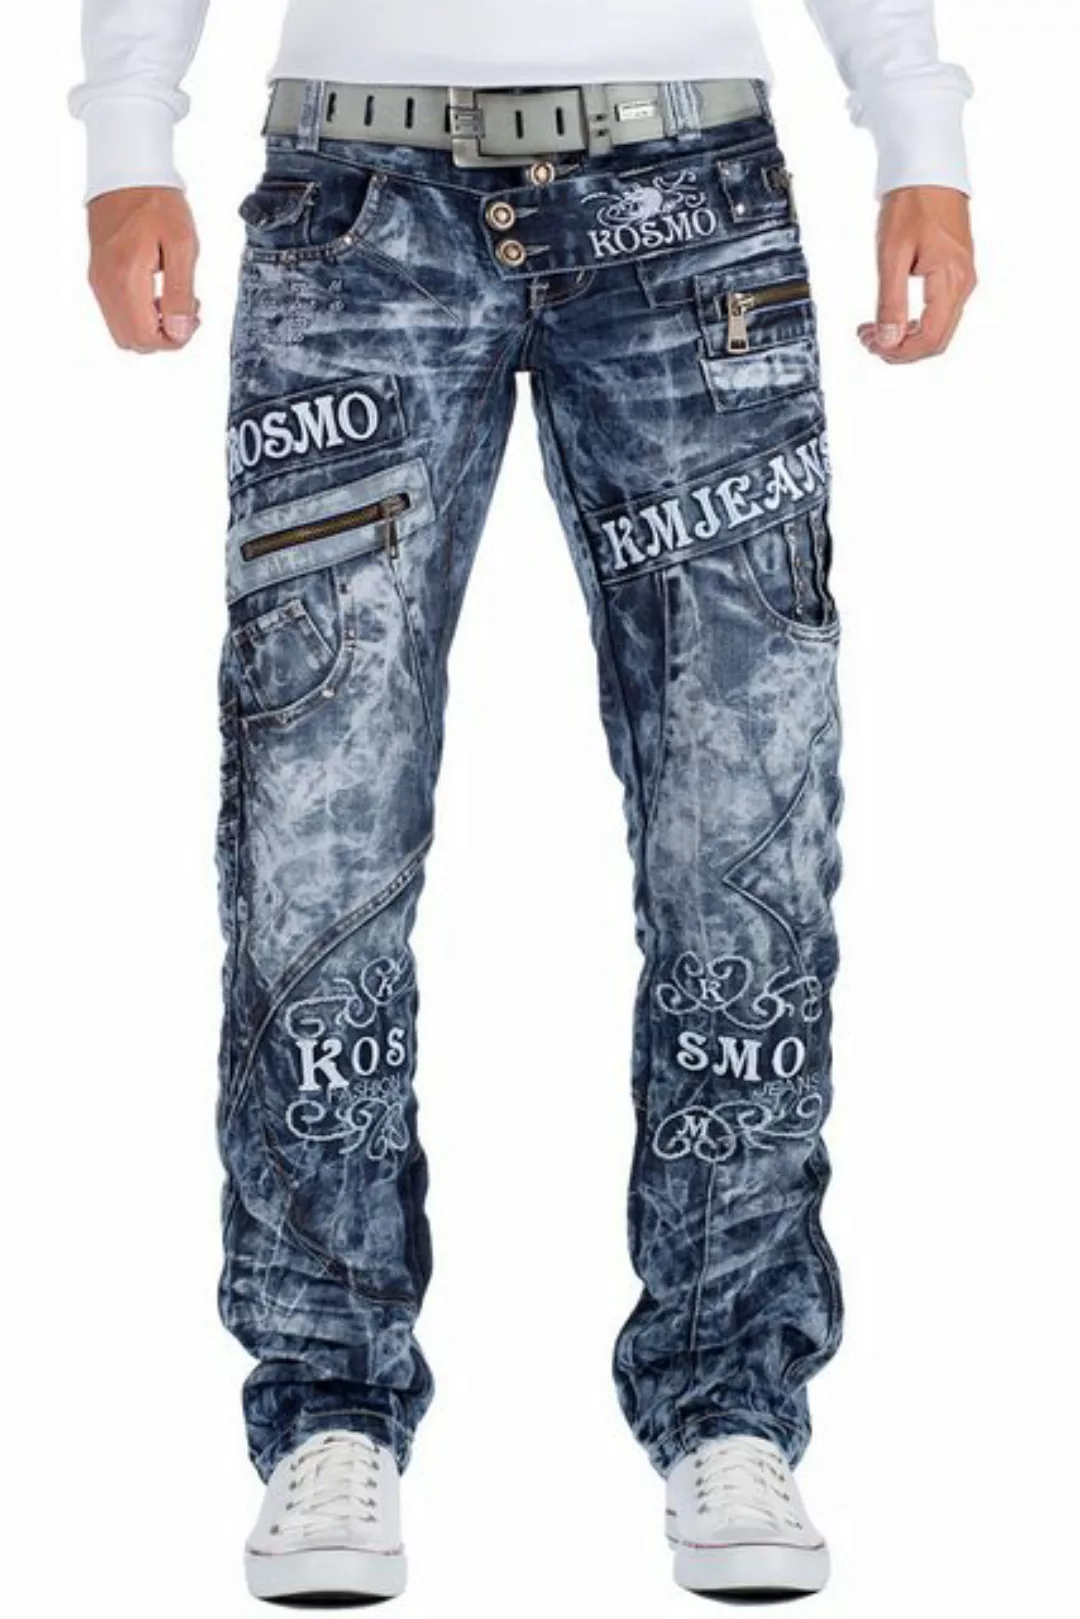 Kosmo Lupo 5-Pocket-Jeans Auffällige Herren Hose BA-KM051 Blau W34/L34 (1-t günstig online kaufen